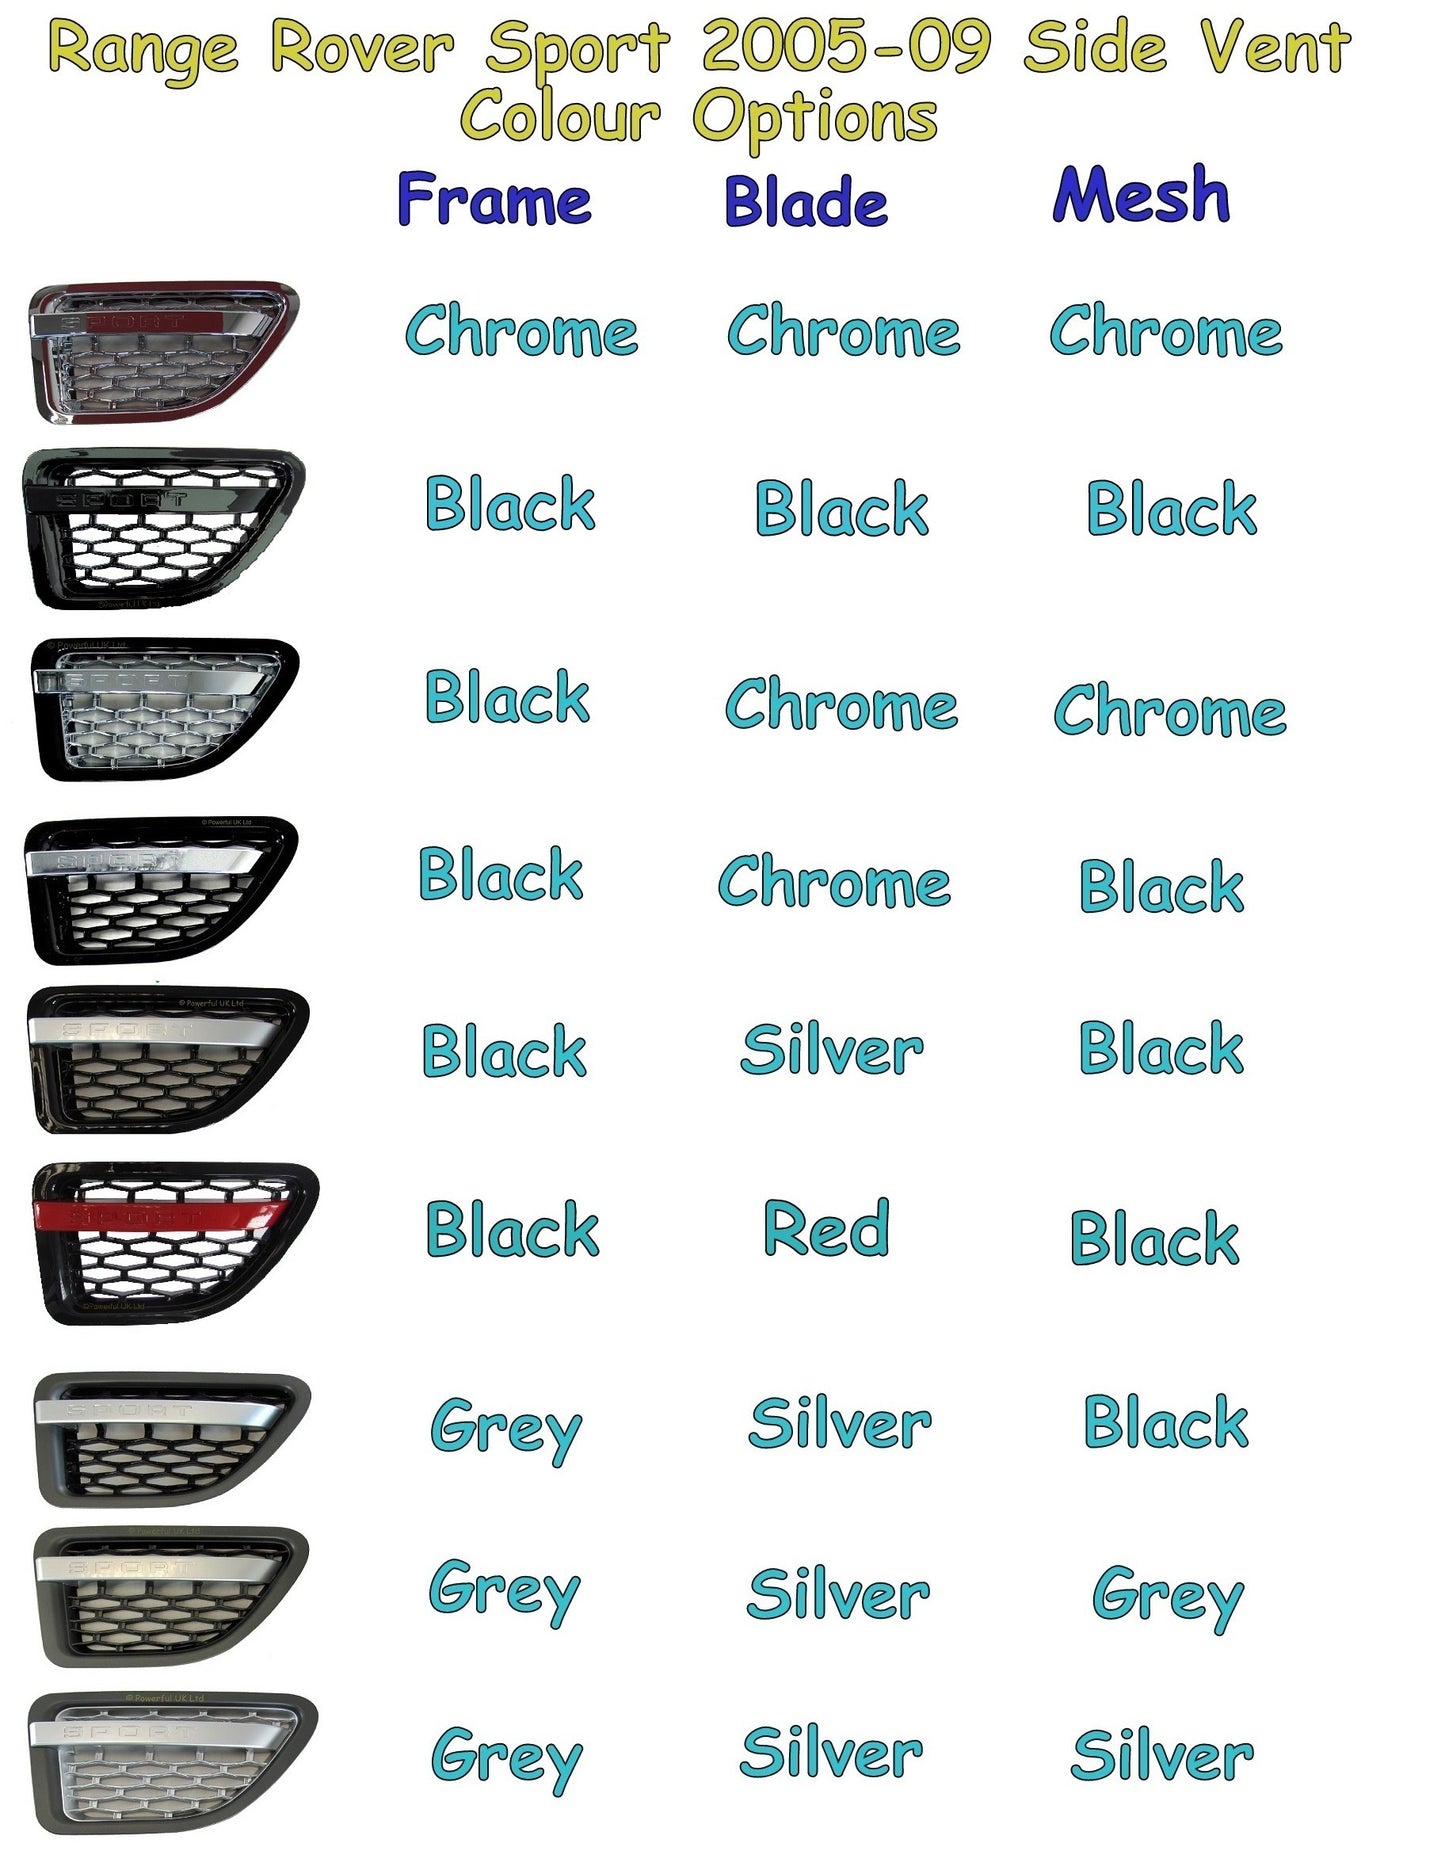 Side Vents - Black/Chrome/Black for Range Rover Sport 2005